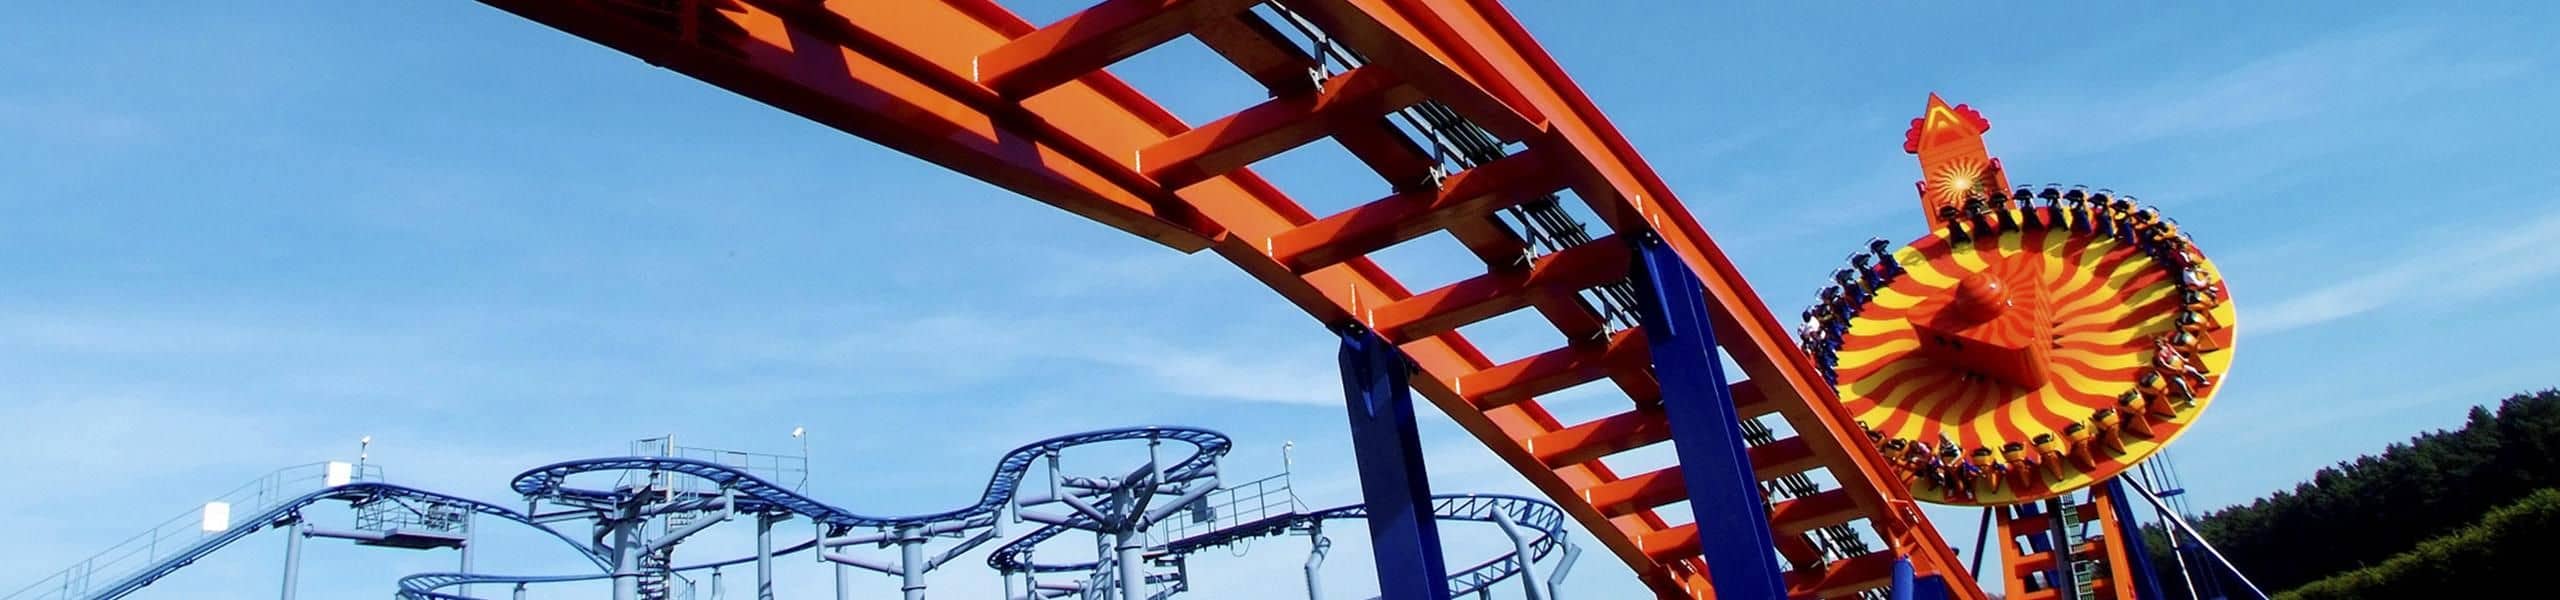 EDGE | Family Roller Coaster | Paultons Park